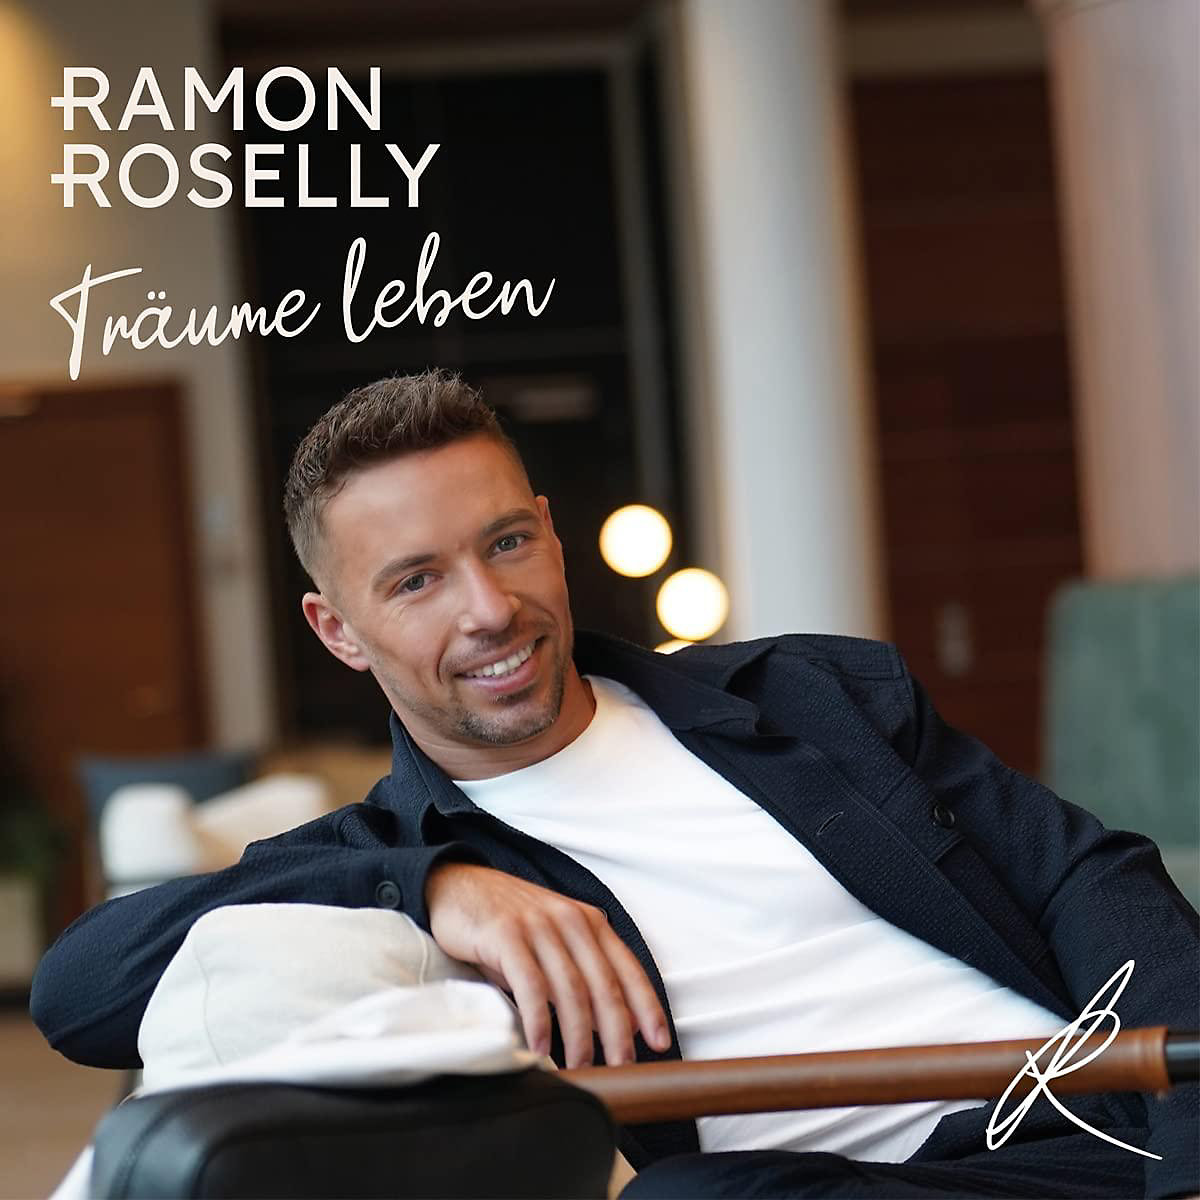 Universal CD Ramon Roselly Träume leben